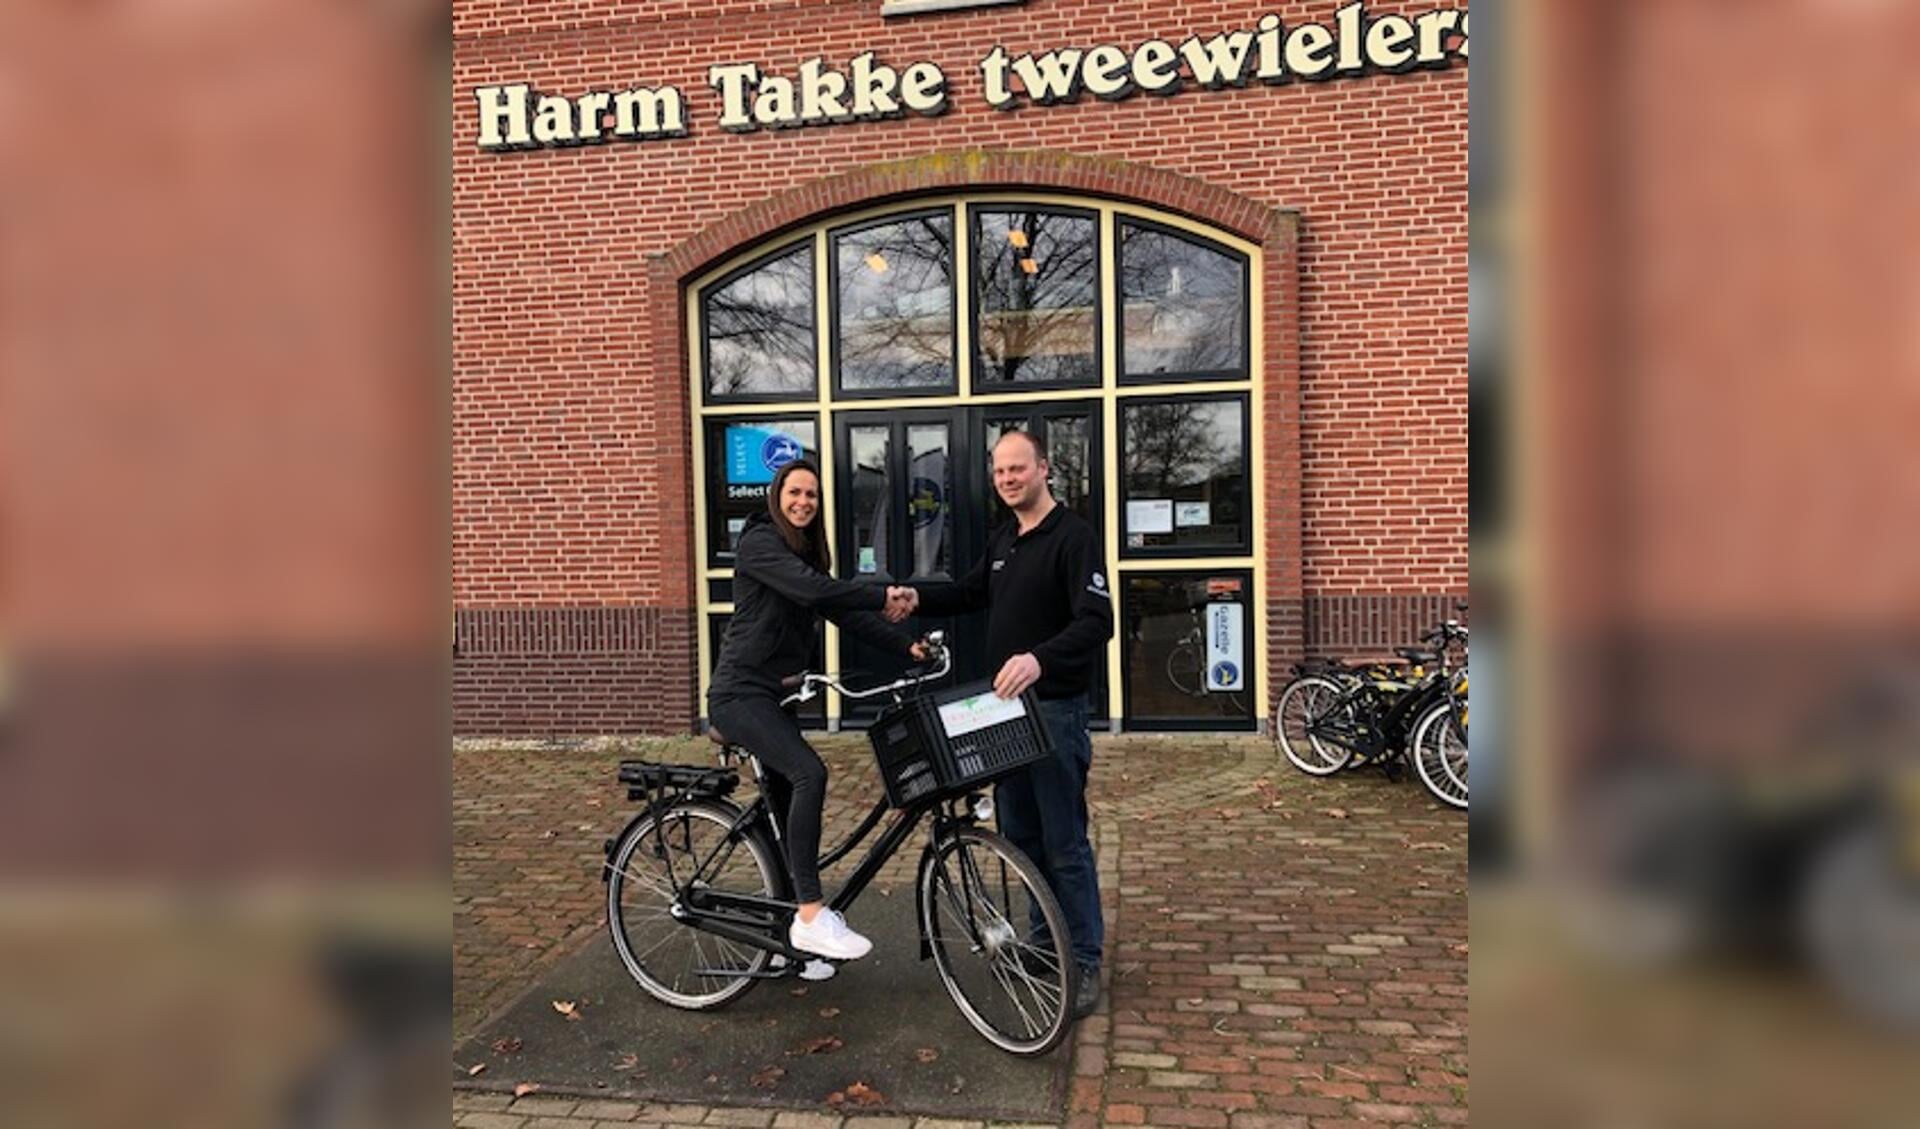 Elena krijgt de fiets overhandigd van Martijn Takke. Foto: PR